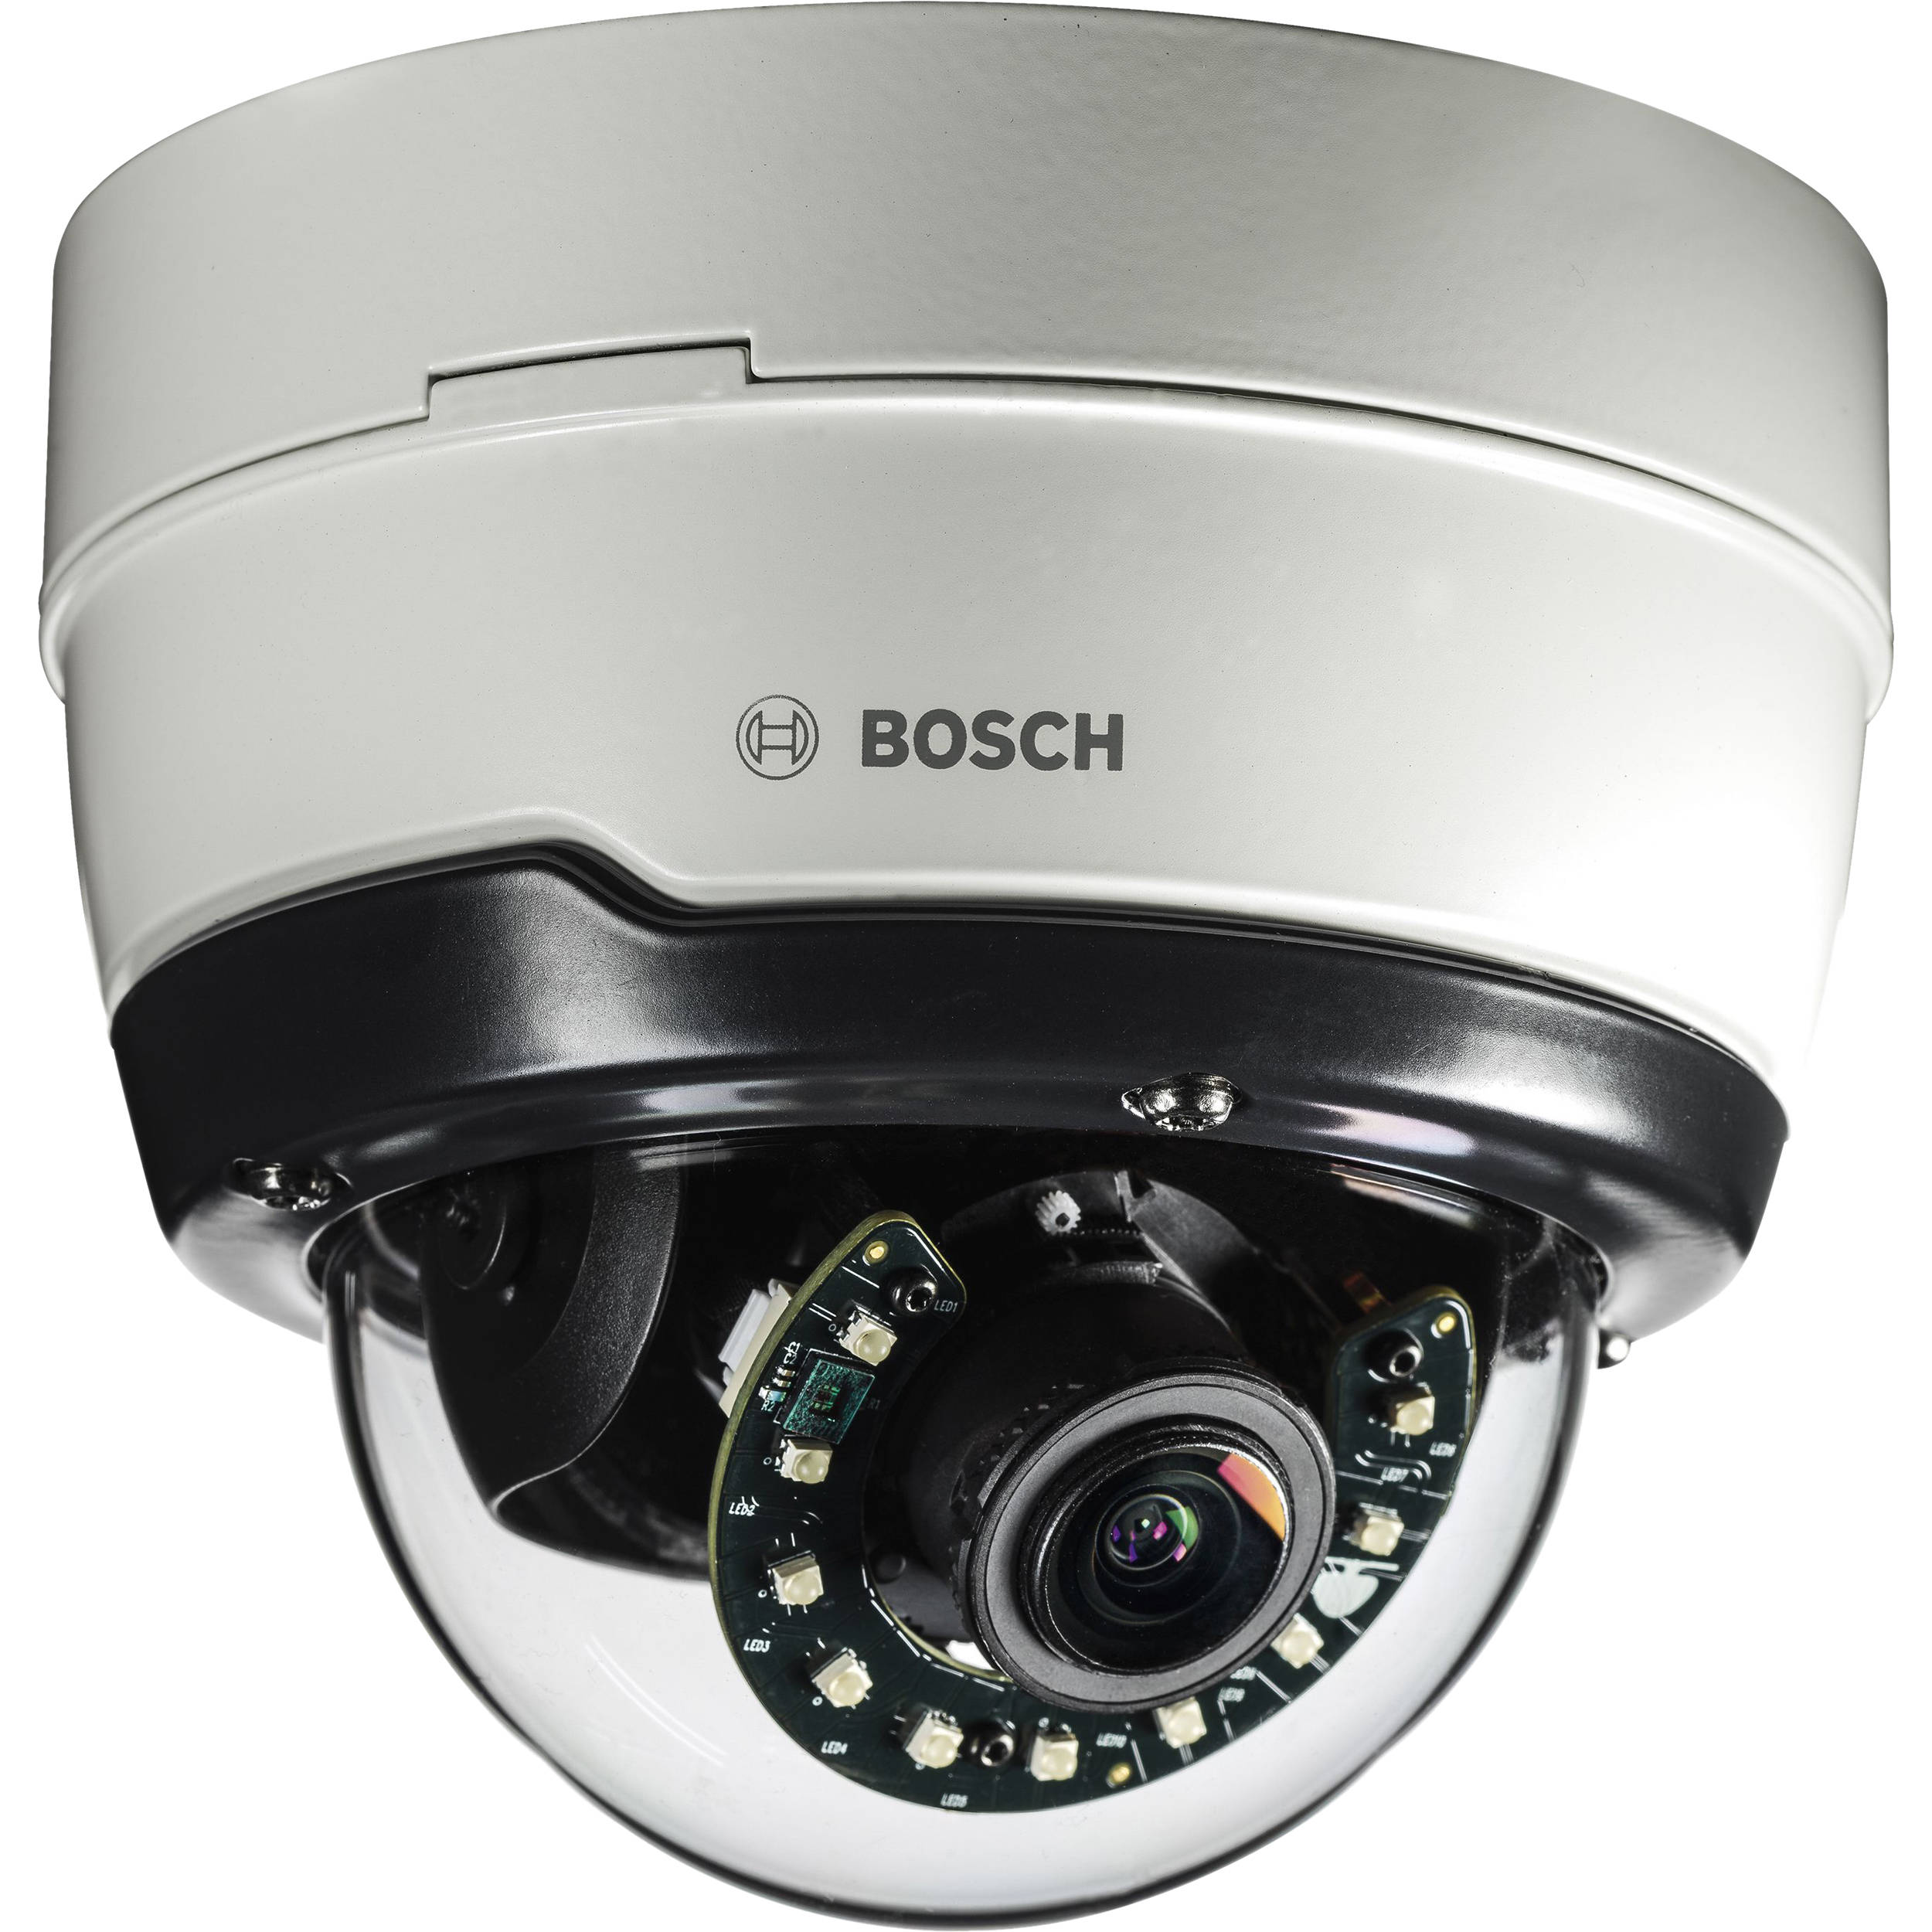 กล้องวงจรปิด Bosch รุ่น NDE-4502-AL